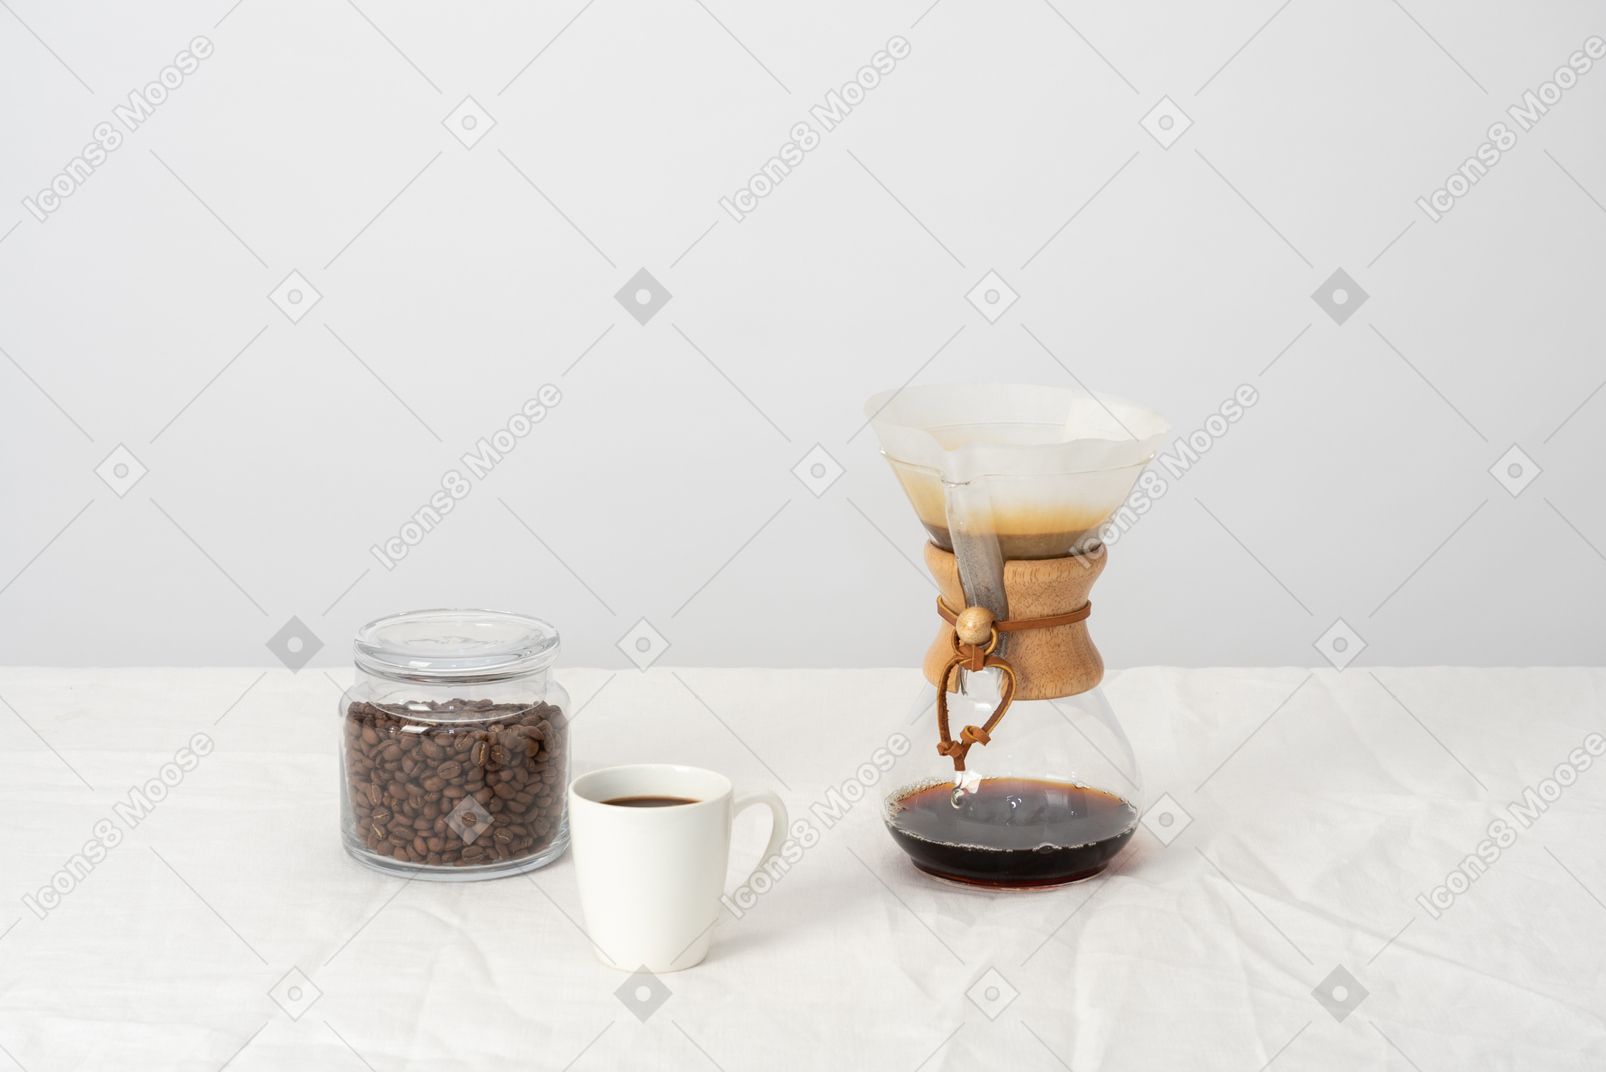 Chemex, taza de café y jarra con granos de café.